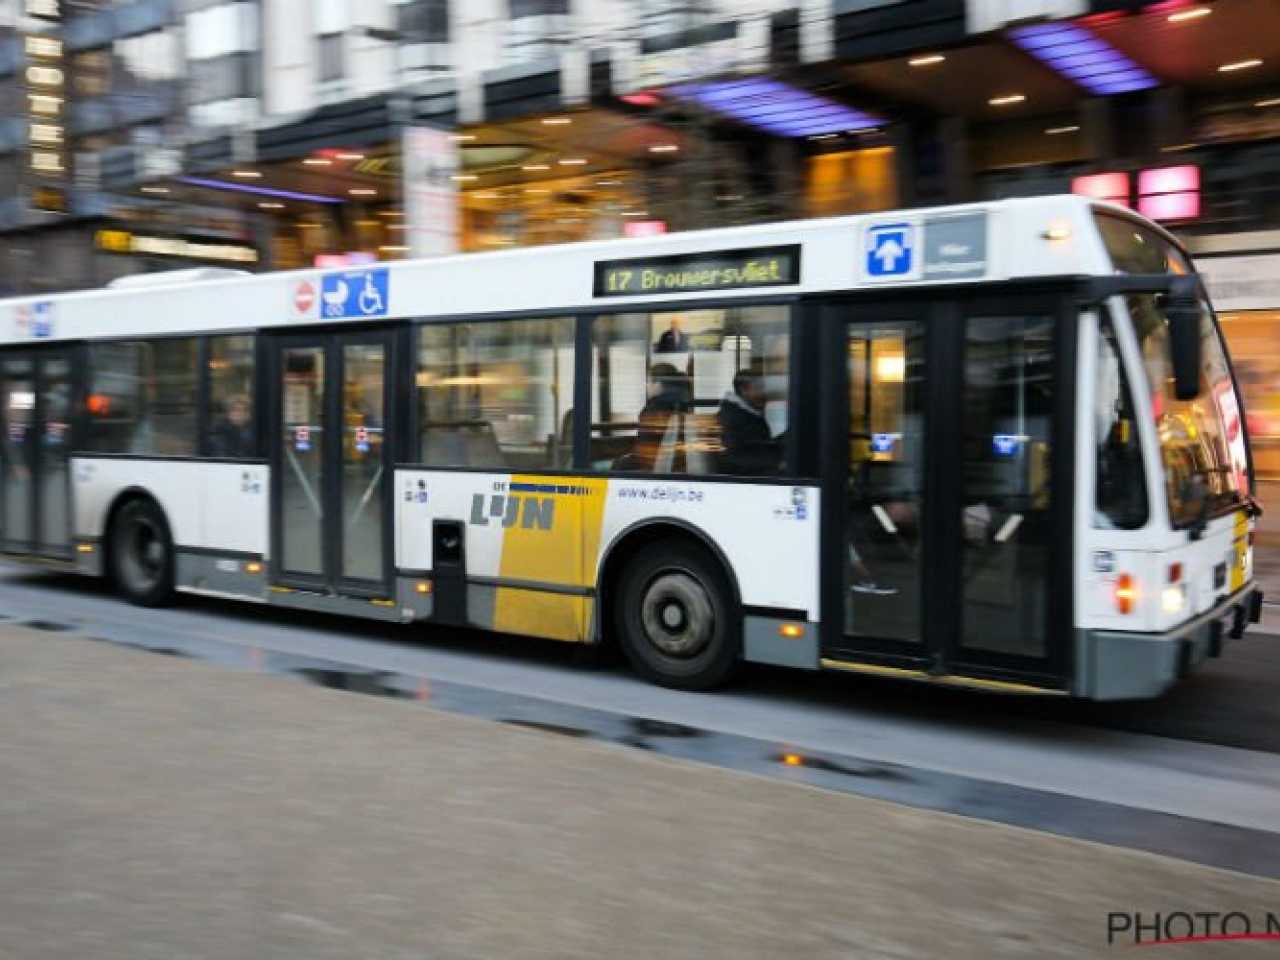 Initiatief Moedig aan Stuwkracht De Lijn reageert op klachten over te volle bussen: “Schuif gewoon wat meer  door!” | Redactie24